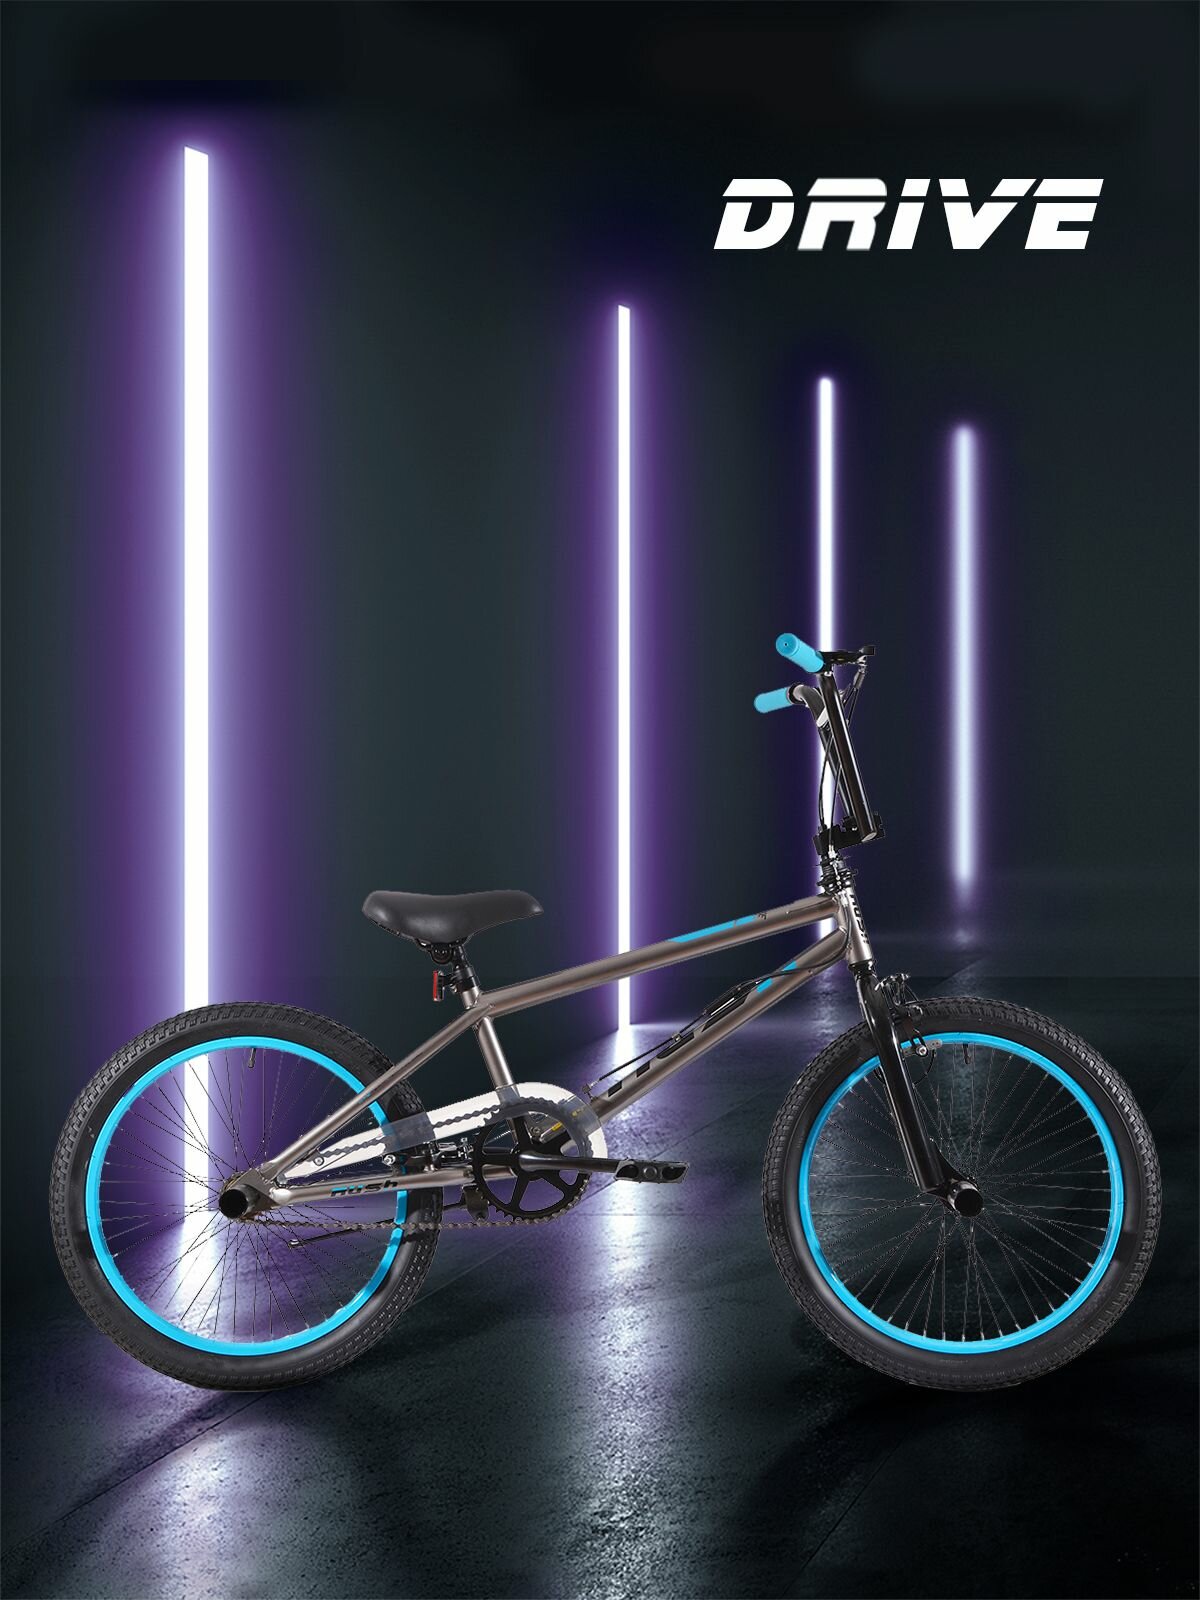 Велосипед подростковый BMX 20" RUSH HOUR DRIVE рама ETT 511 мм рост 120-160 см. БМХ велосипед для прыжков экстремальный трюковой с пегами